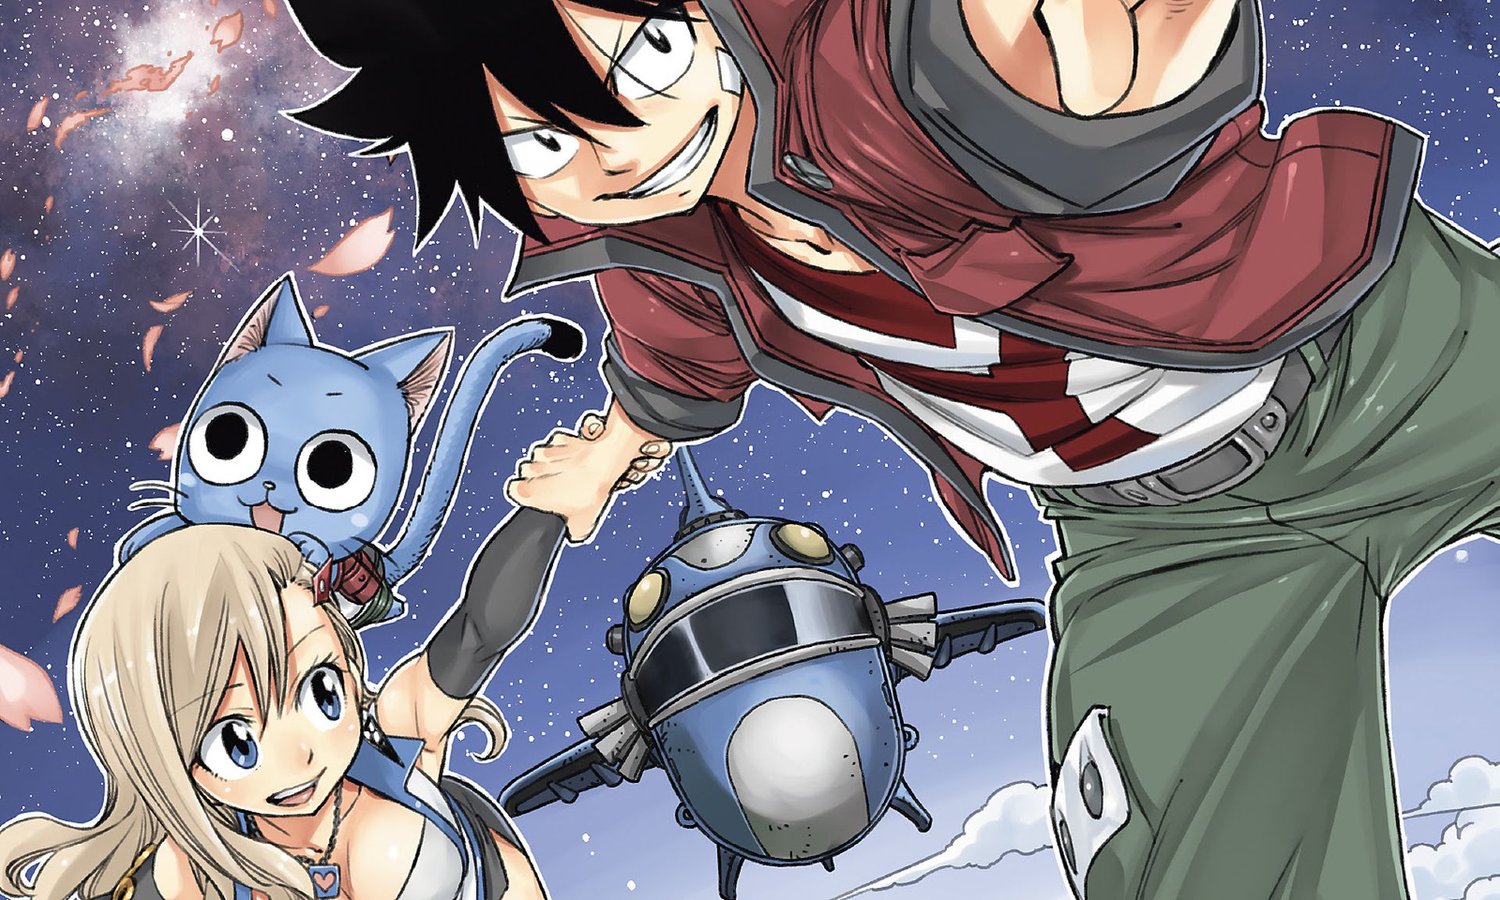 Lisez 1400 $ de Hiro Mashima Manga pour seulement 30 $ avec Humble Bundle